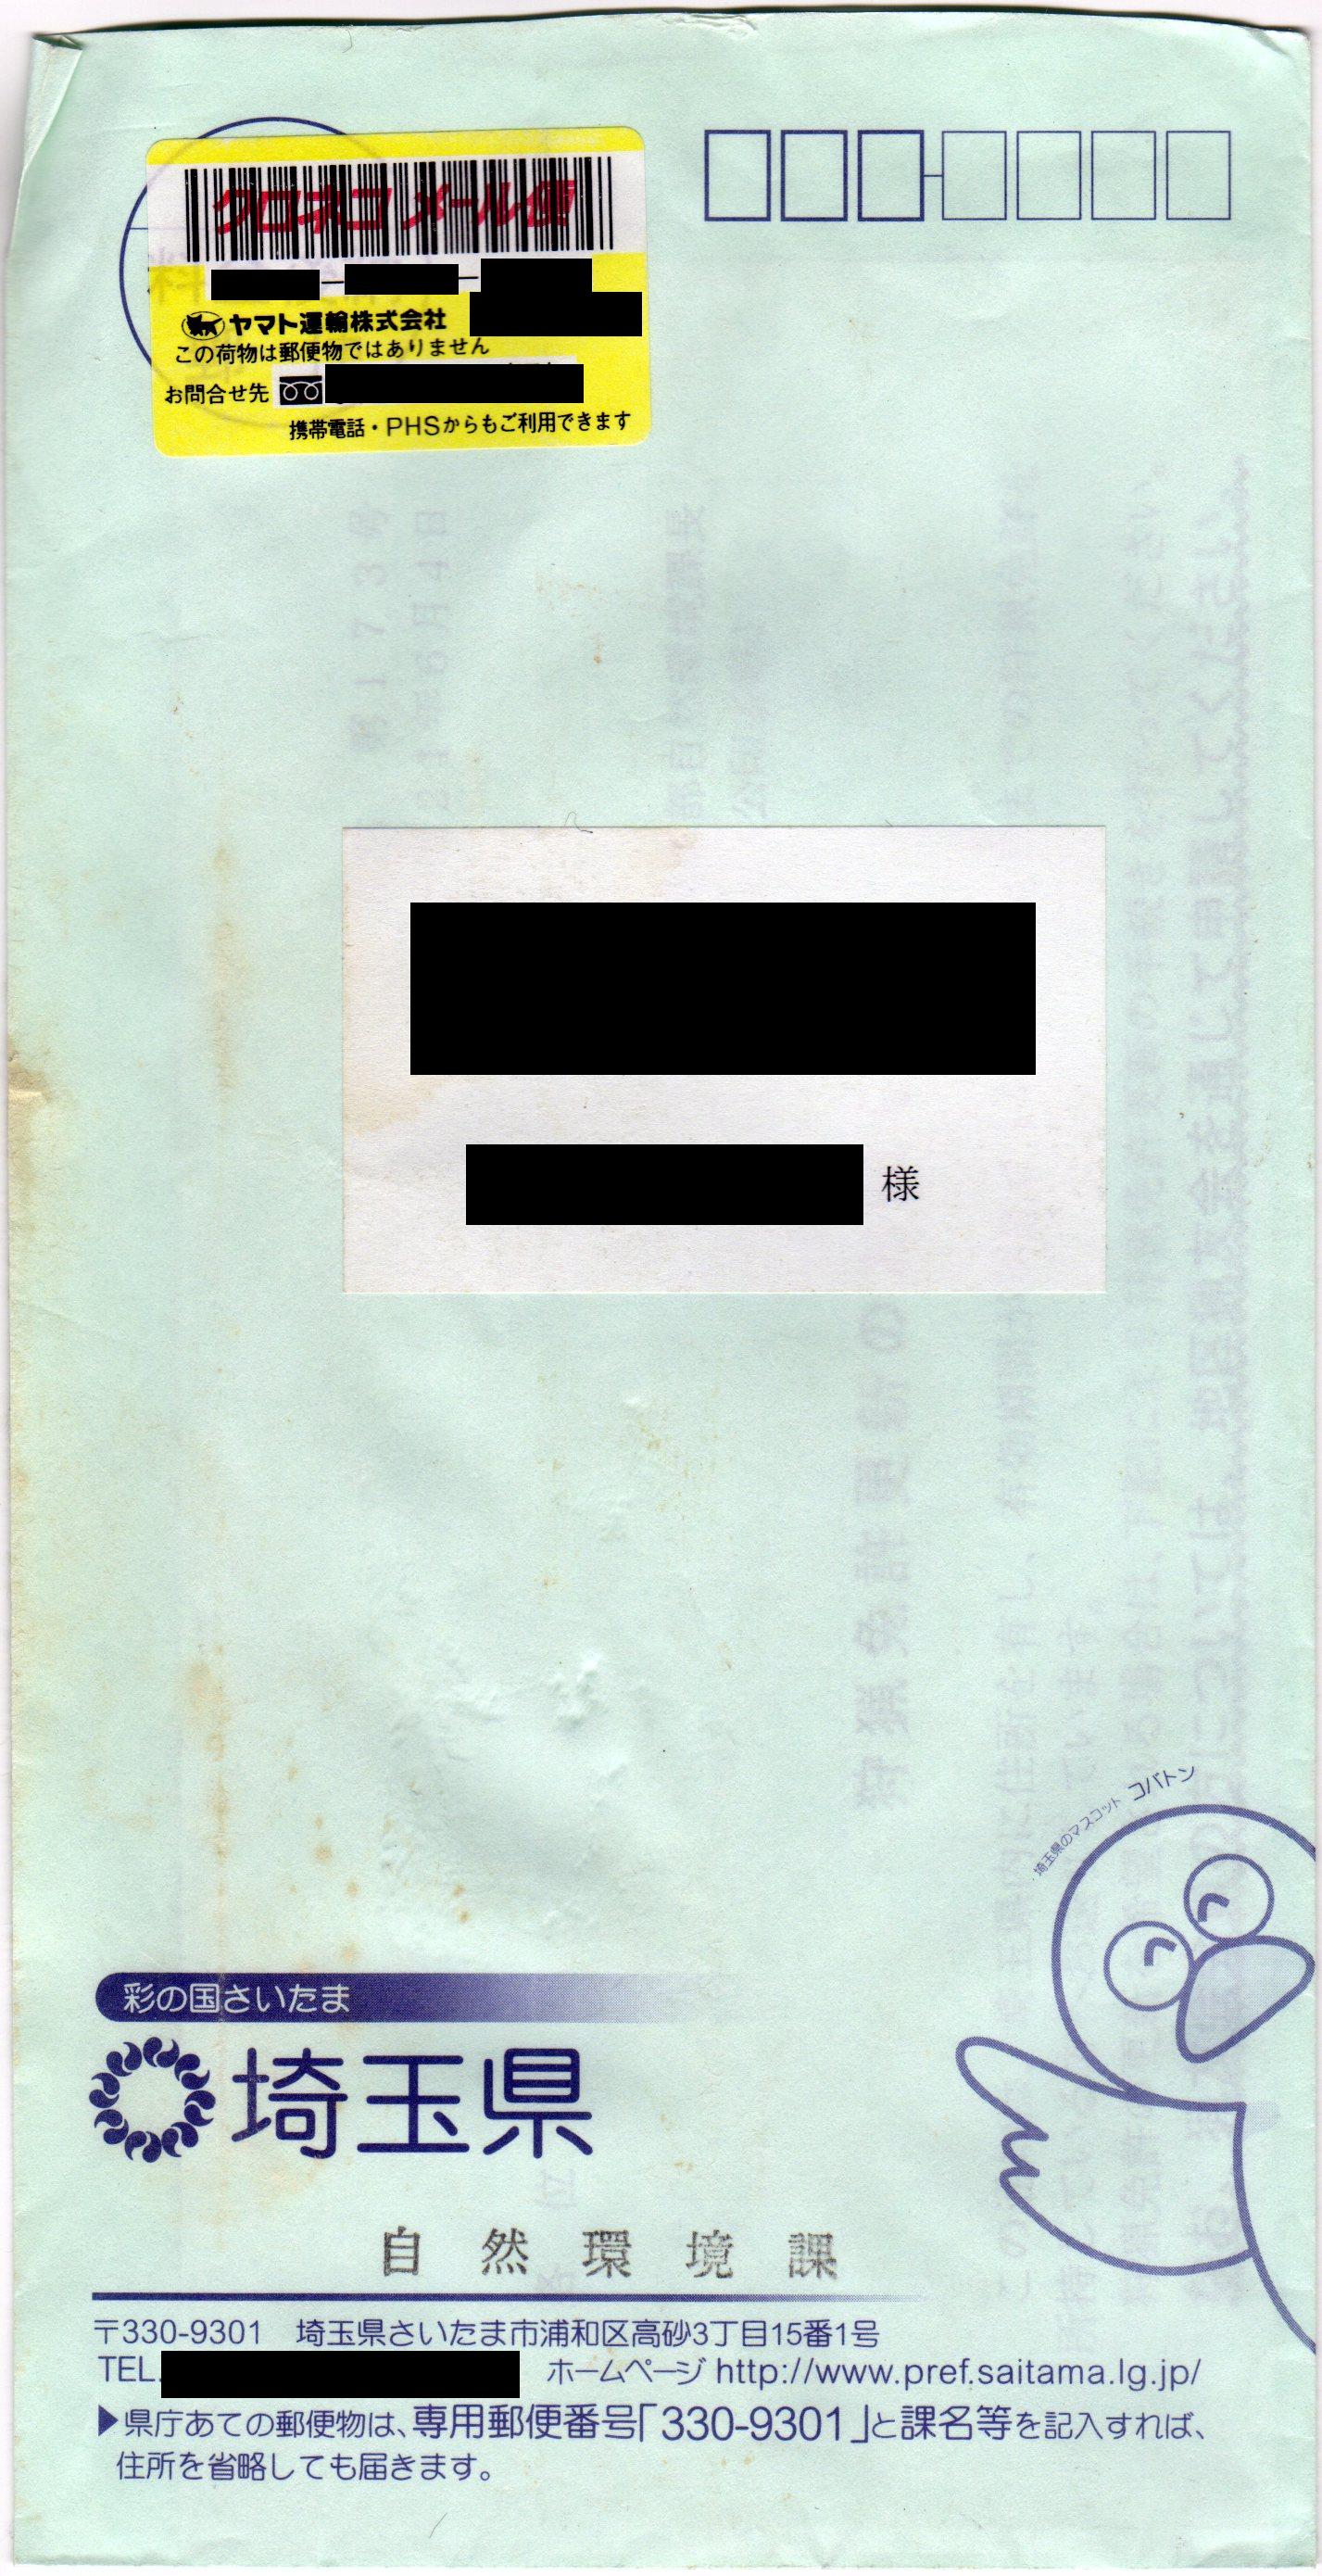 File:2009-06-04-Envelope-MailService-SaitamaPrefecturalGovernment